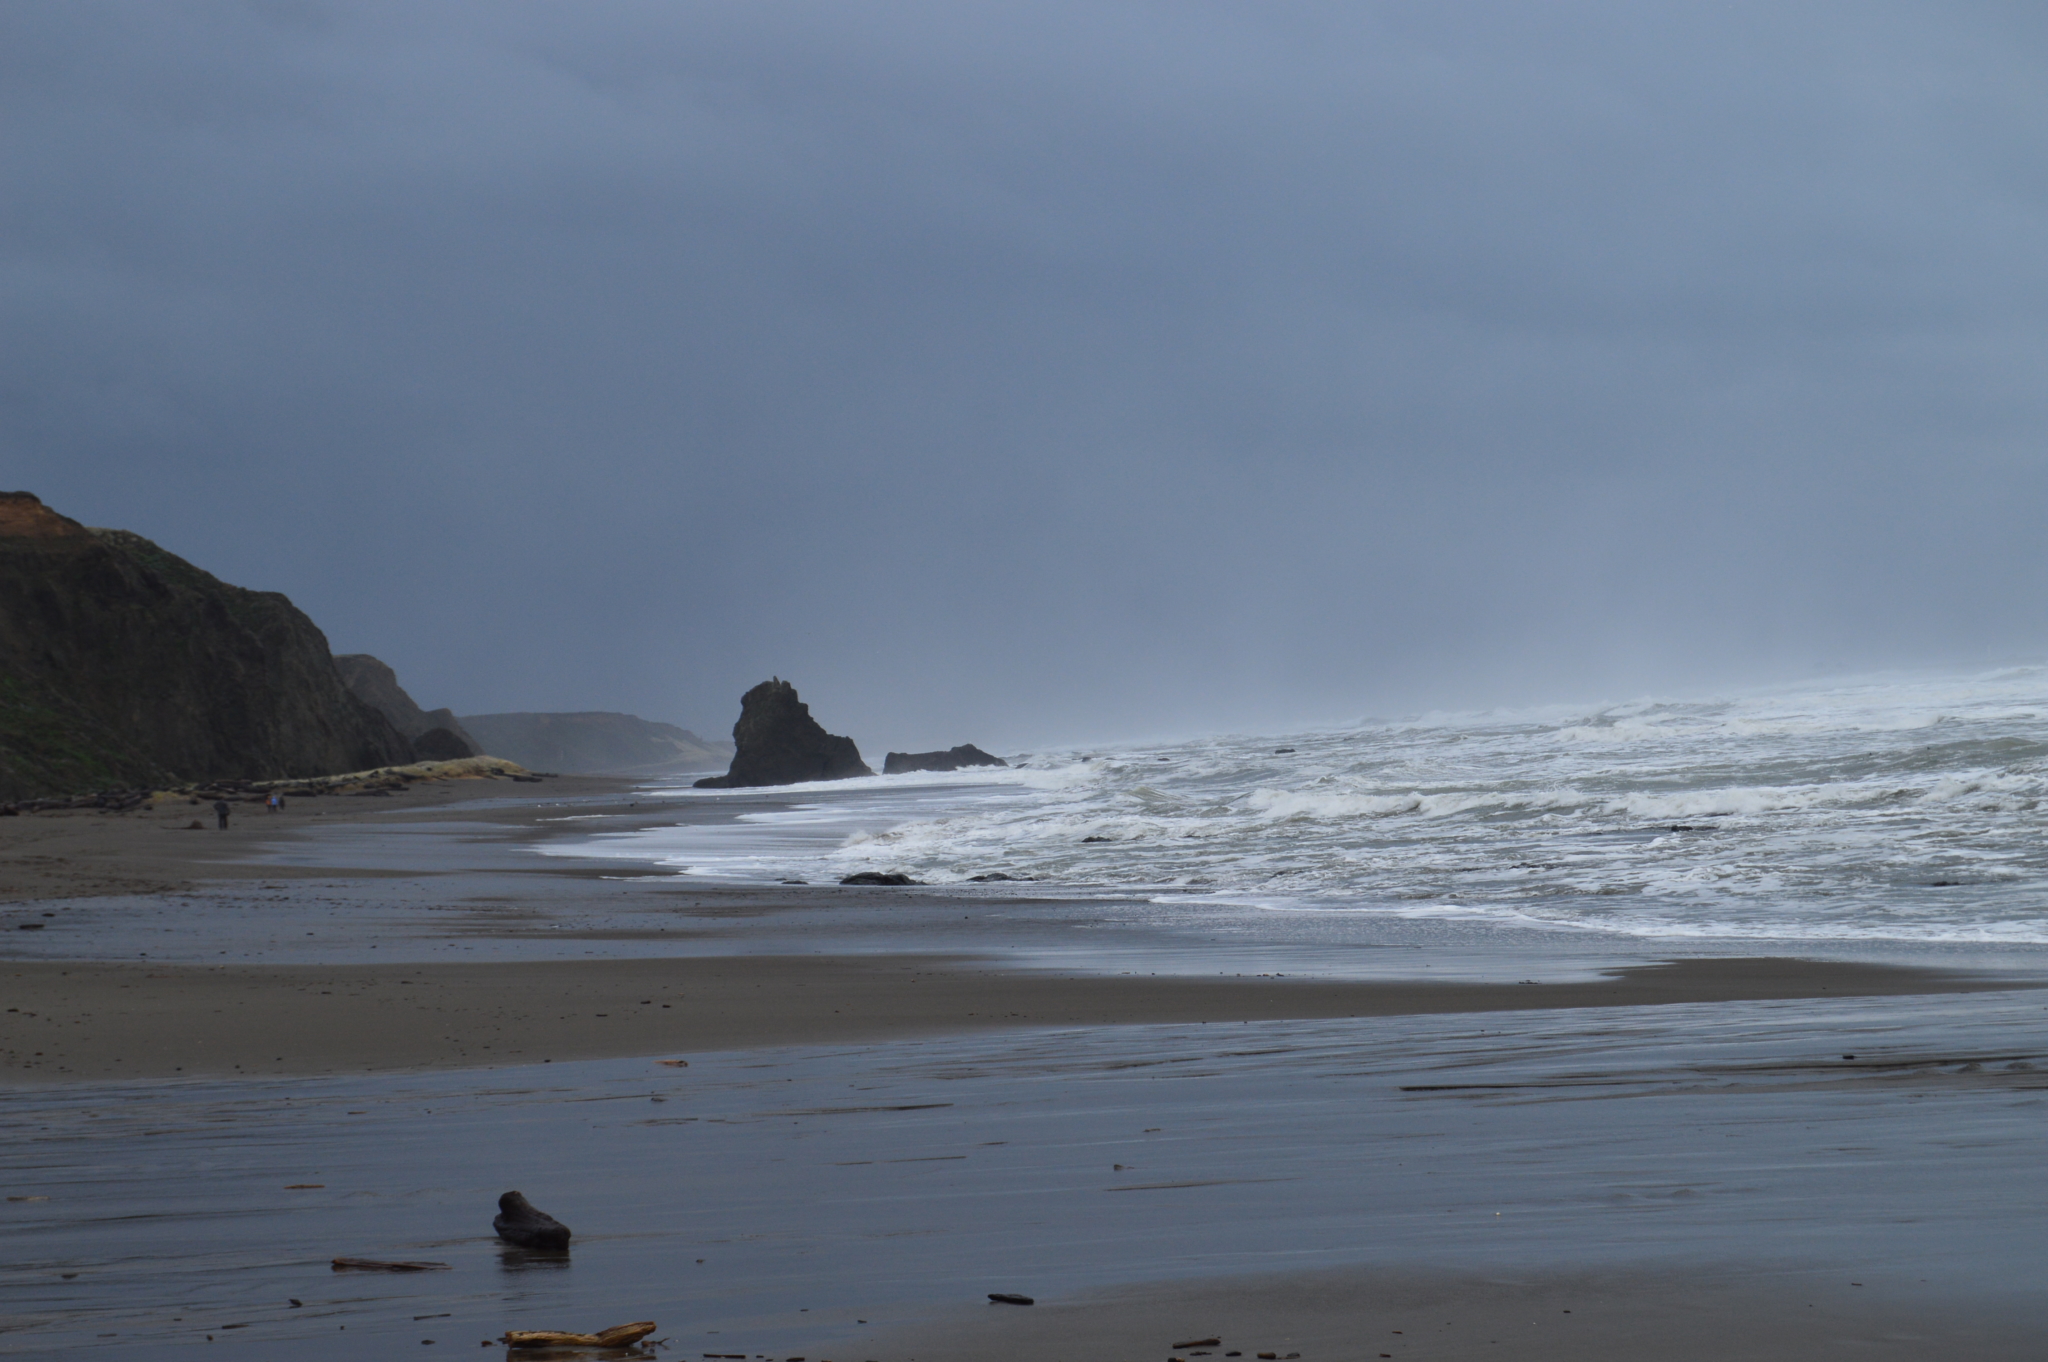 Rough ocean waves crashing into shore in California